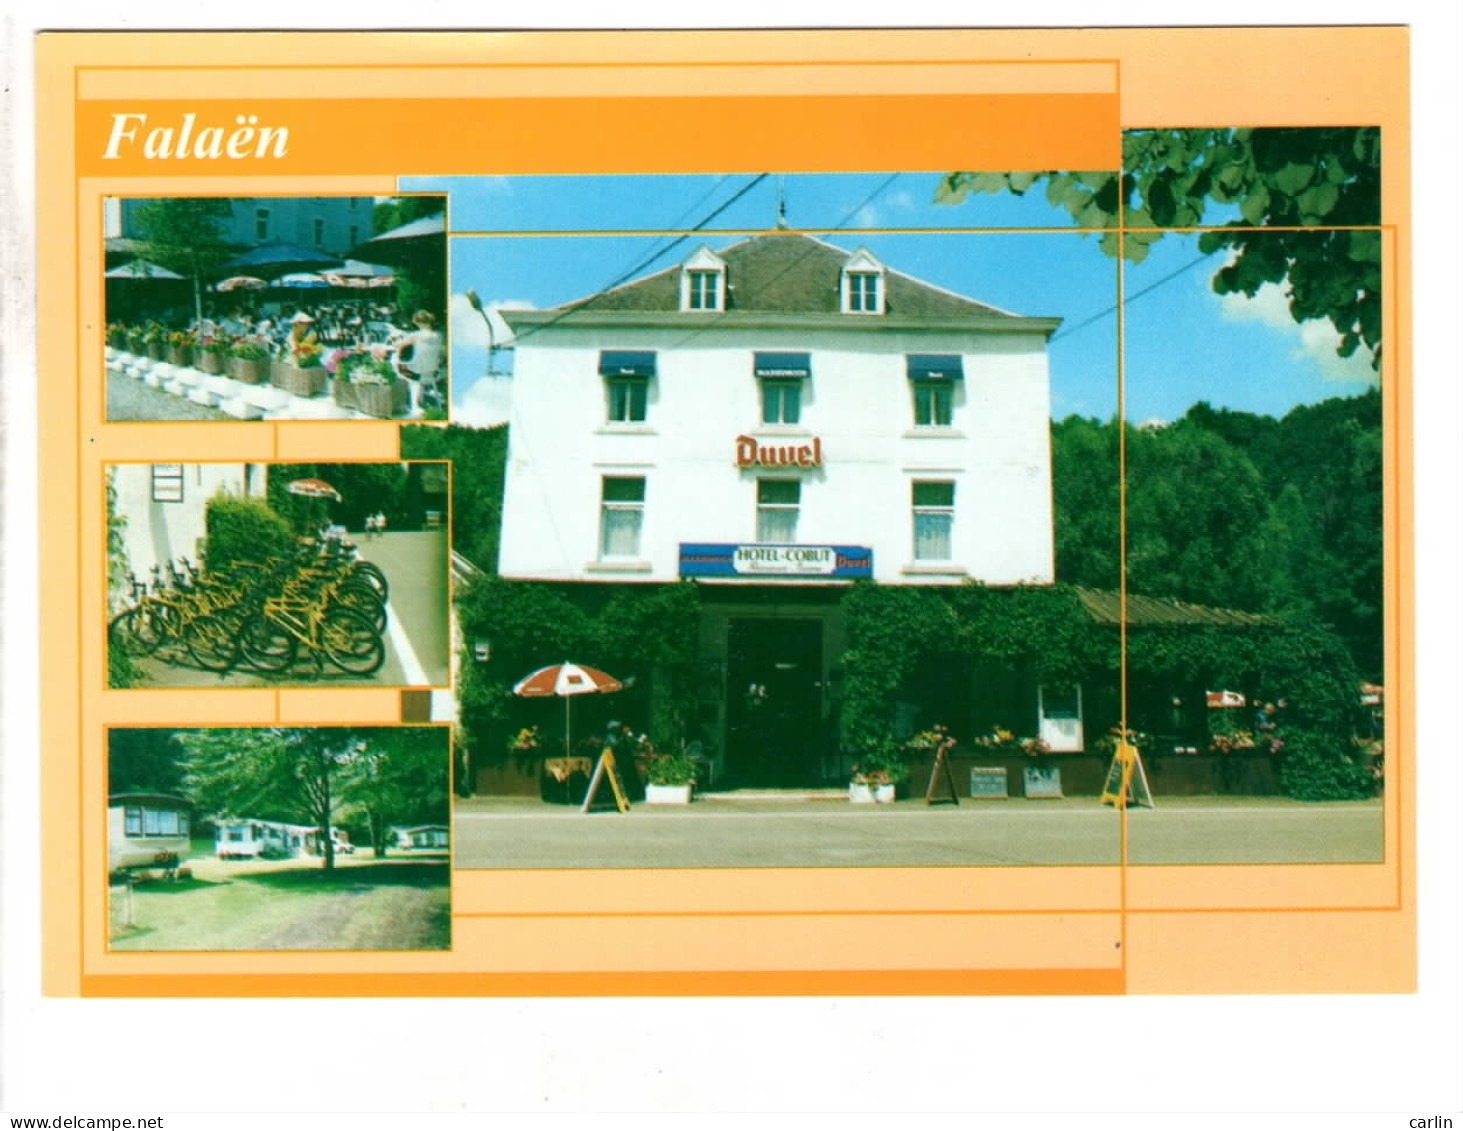 Falaen Hôtel Cobut ( Publicité Bières Duvel ) - Onhaye